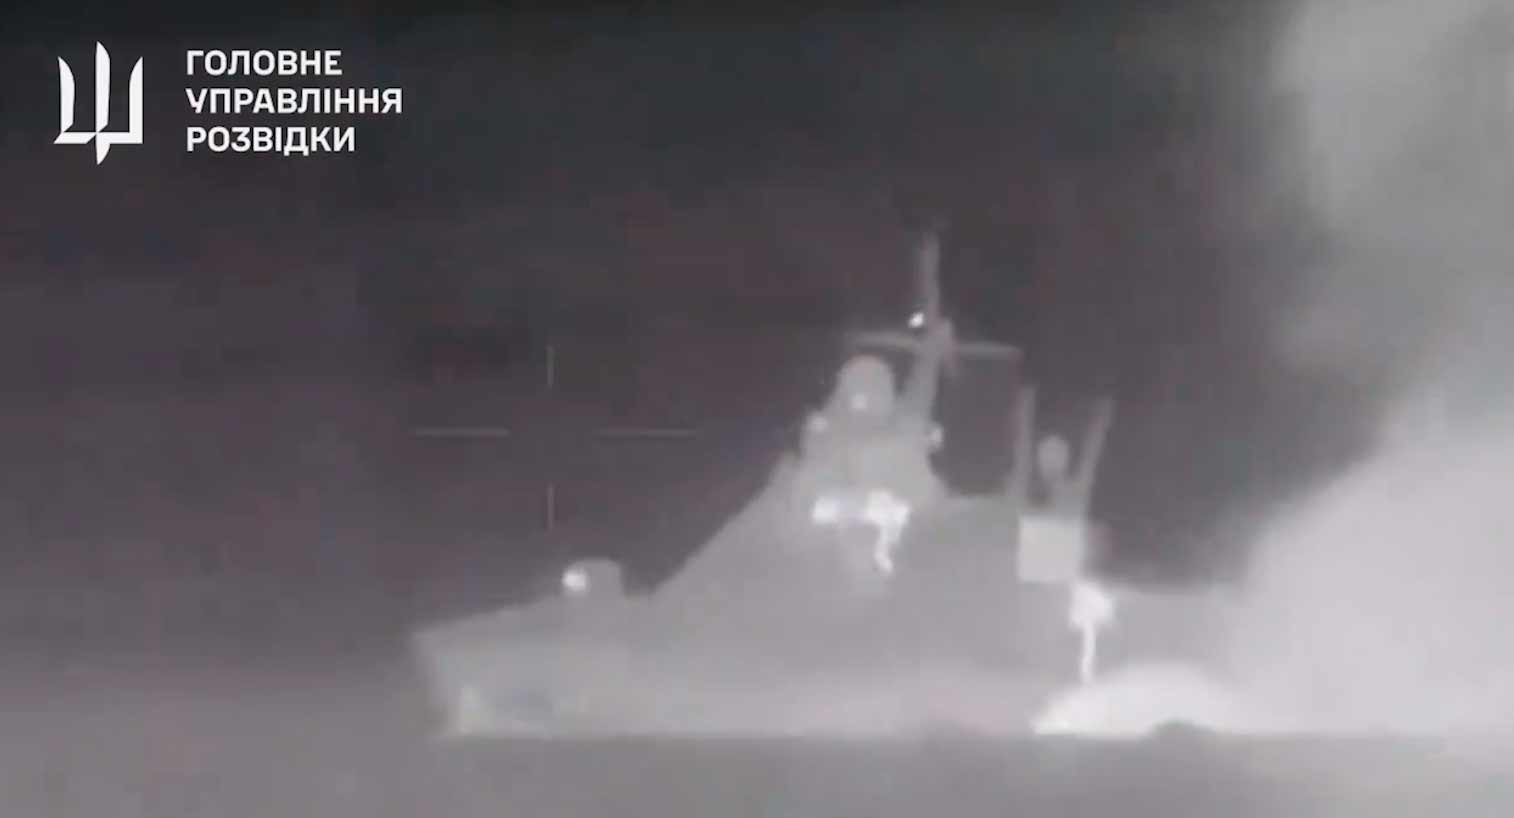 Nouvelle vidéo montre l'explosion qui a coulé le navire russe Sergey Kotov. Reproduction Twitter @wartranslated